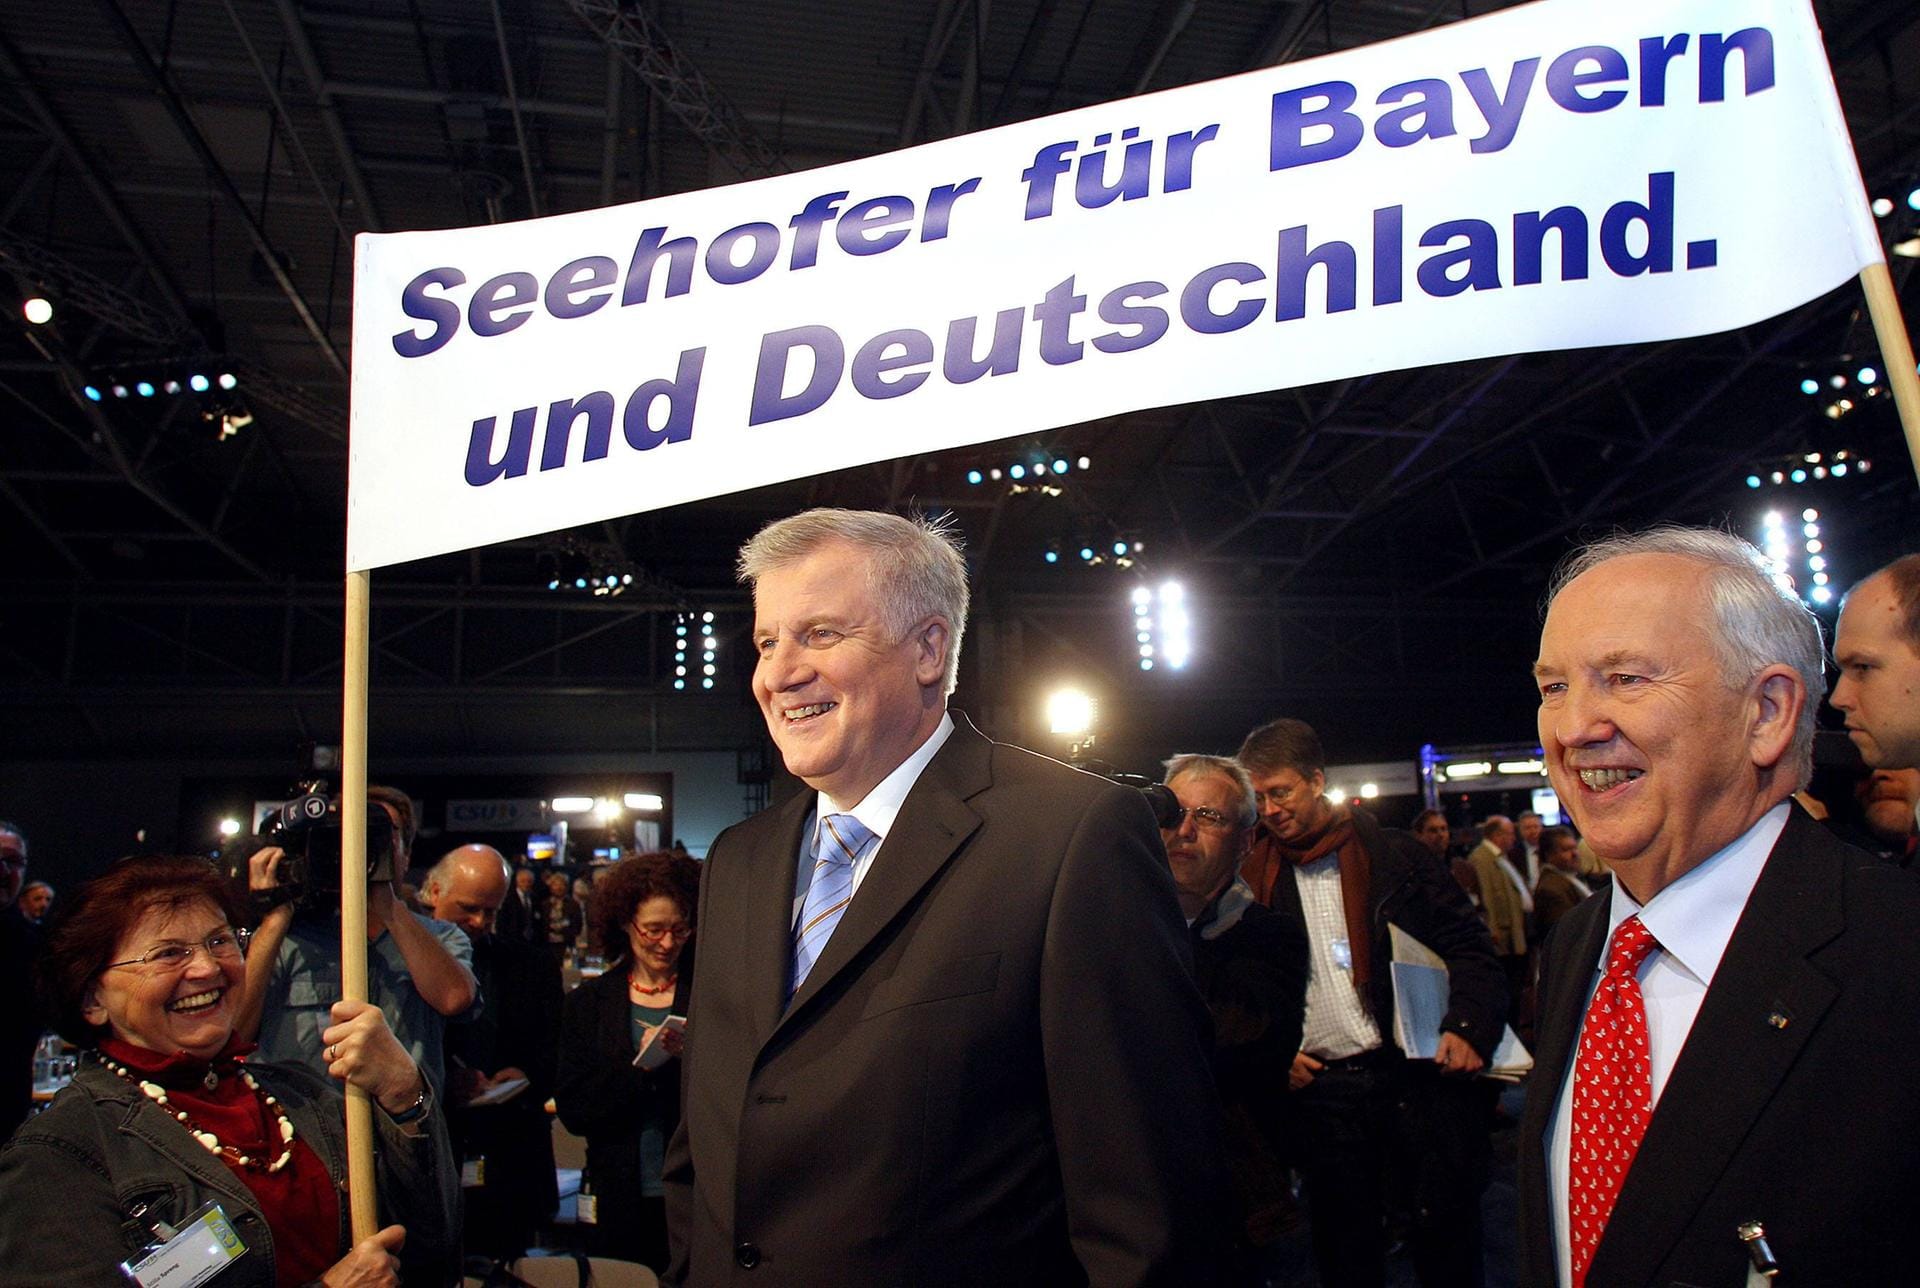 Nach dem Rücktritt von Erwin Huber wurde Seehofer am 25. Oktober 2008 auf einem Sonderparteitag der CSU von 90,3 % der Stimmen zum CSU-Vorsitzenden gewählt.